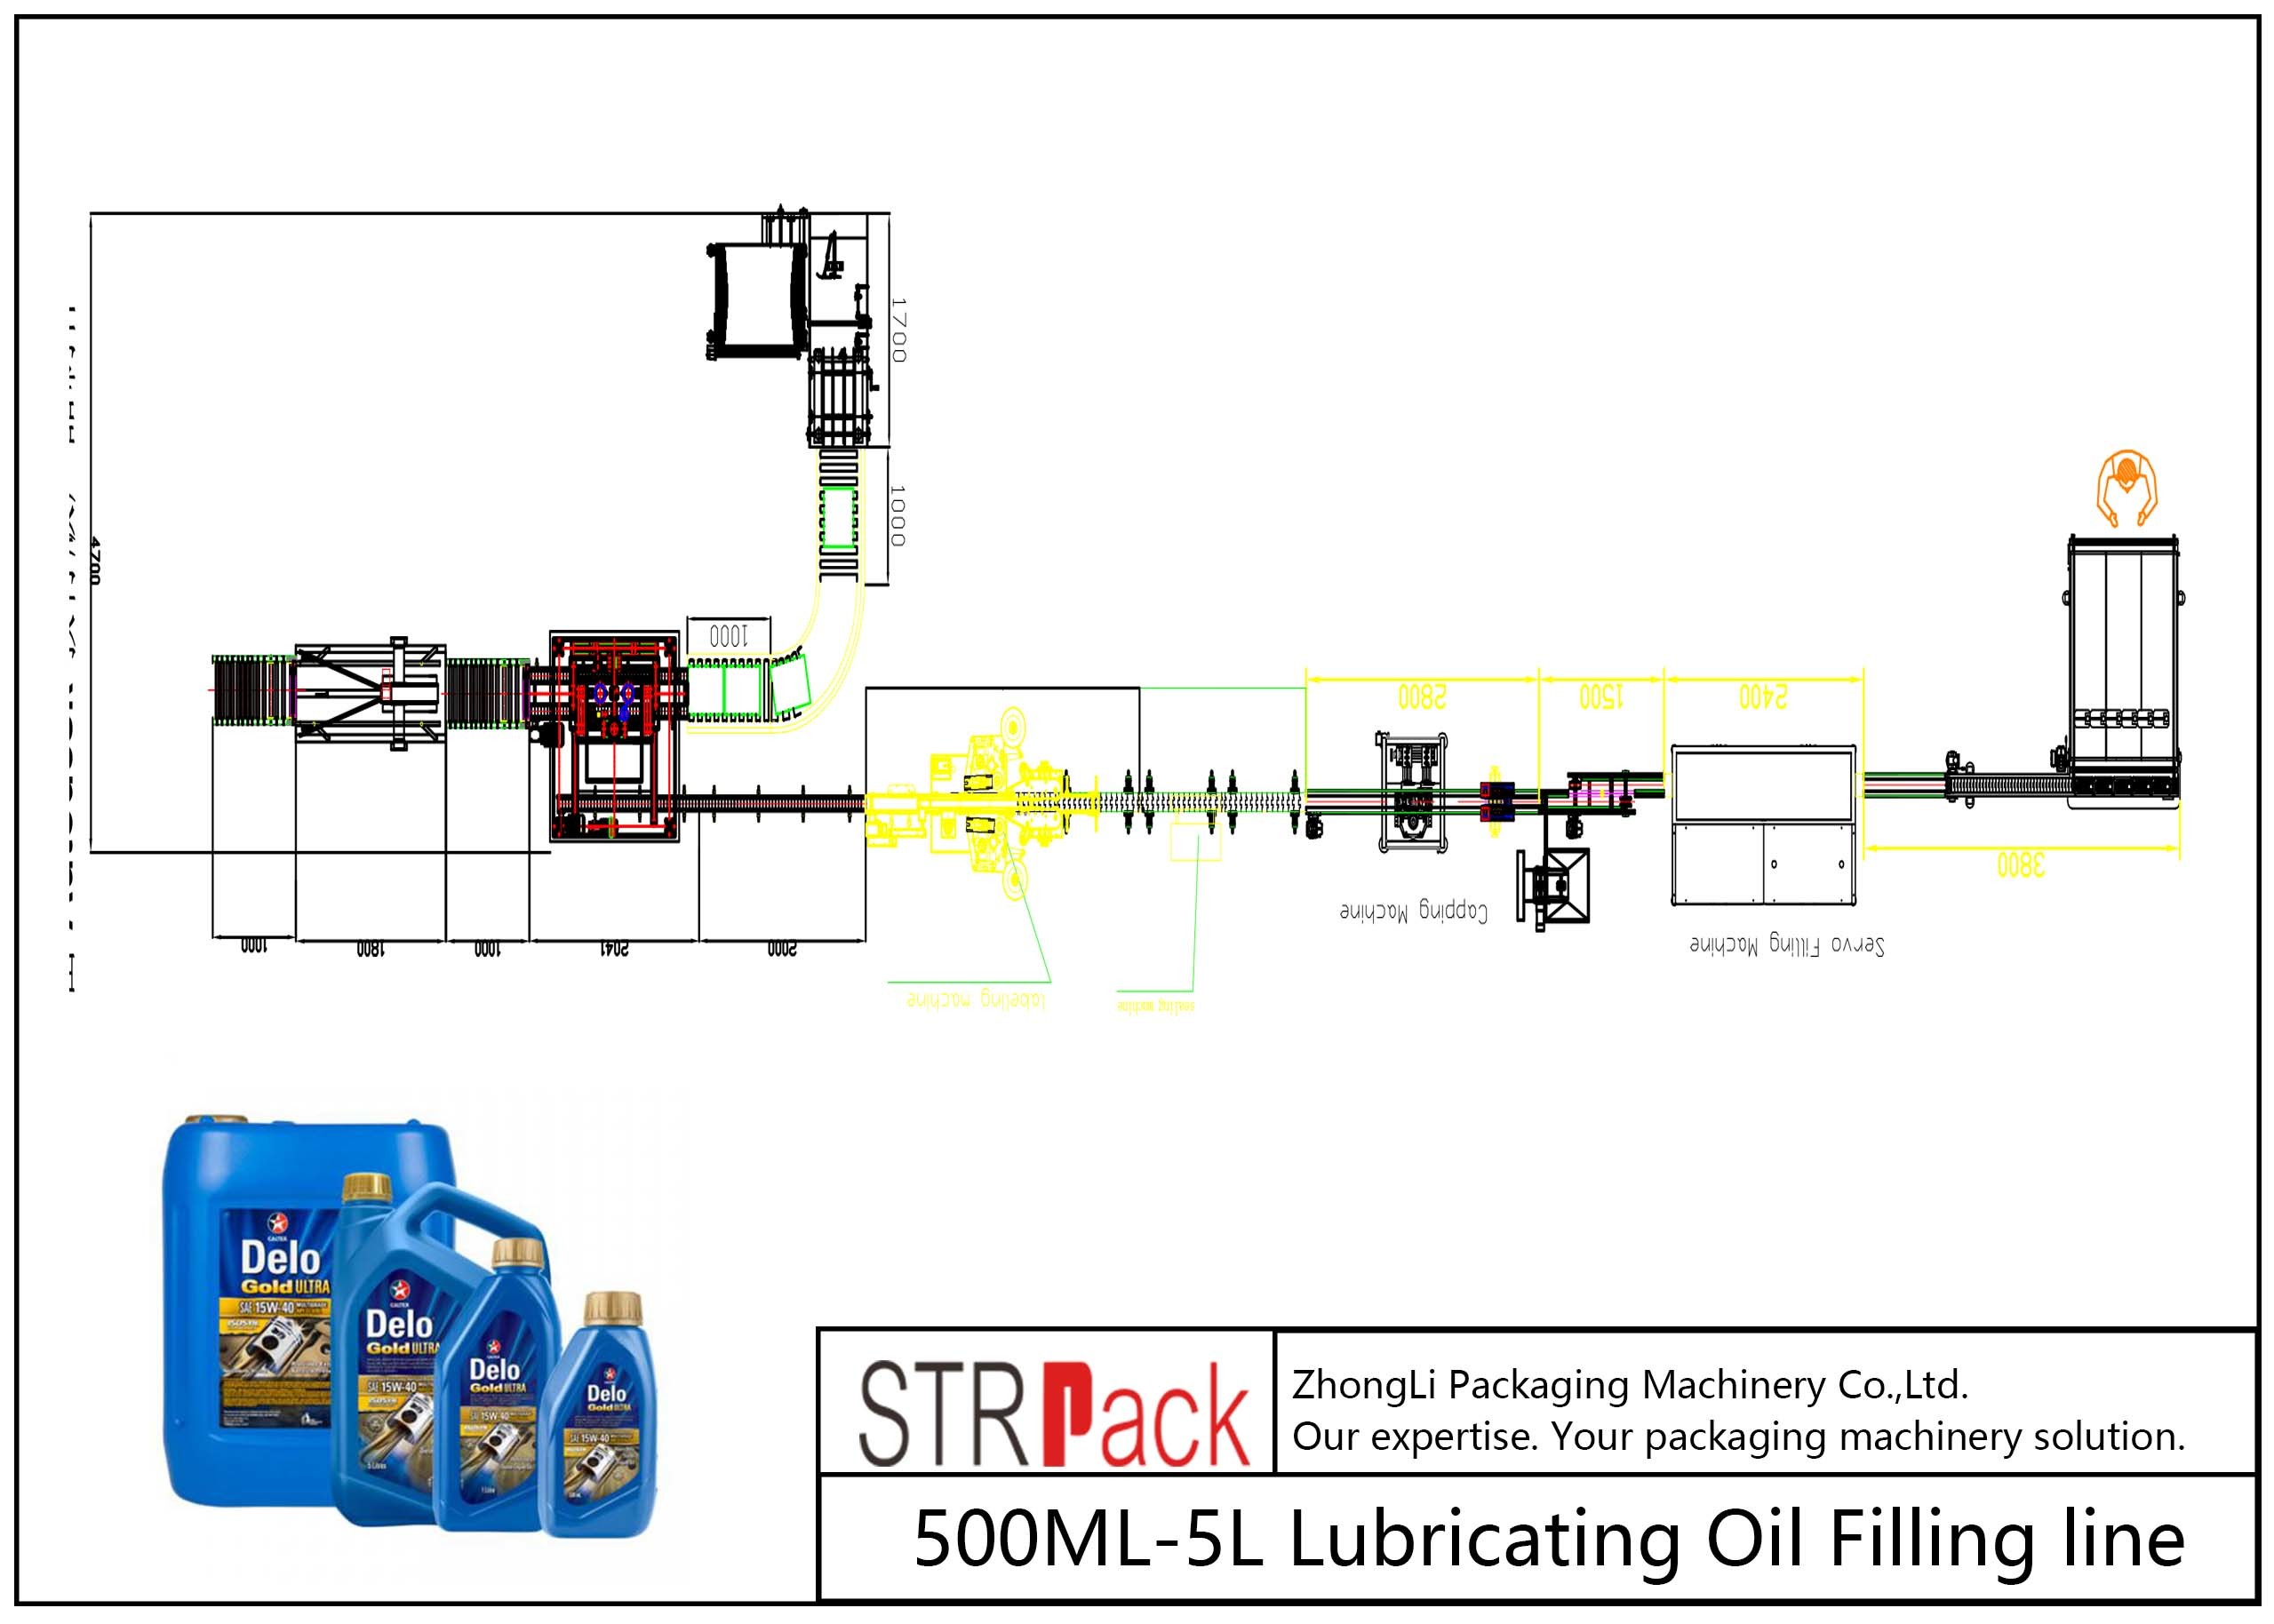 उच्च दक्षता बोतल भरने की रेखा 500ML - 5L चिकनाई तेल भरने की रेखा